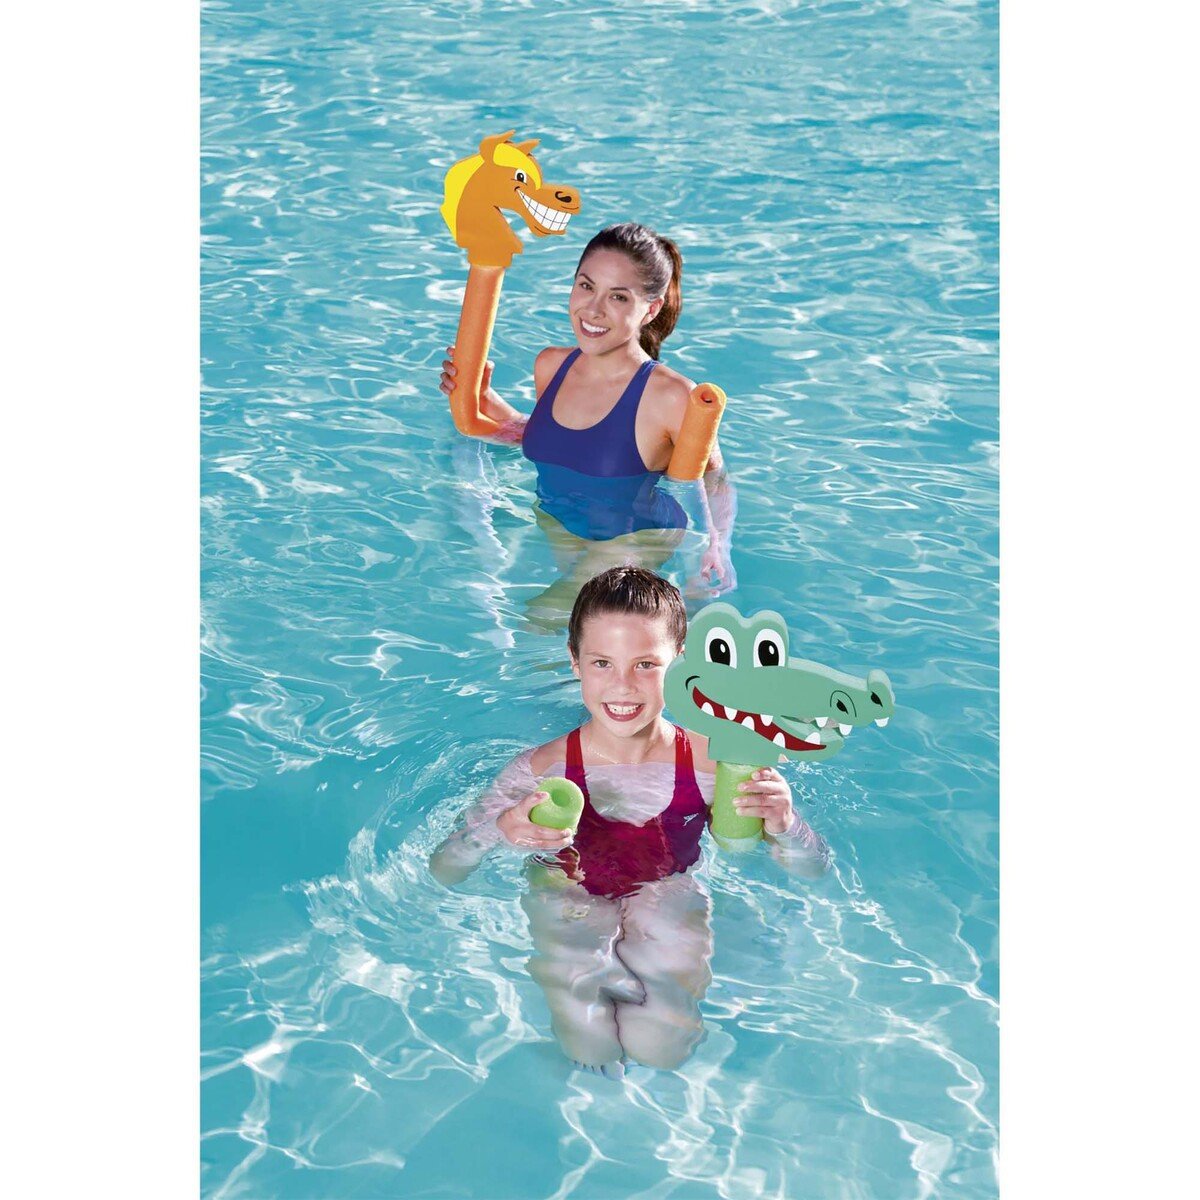 Bestway Aqua Bones Swimming Protector Sets 32108 Assorted 1pc